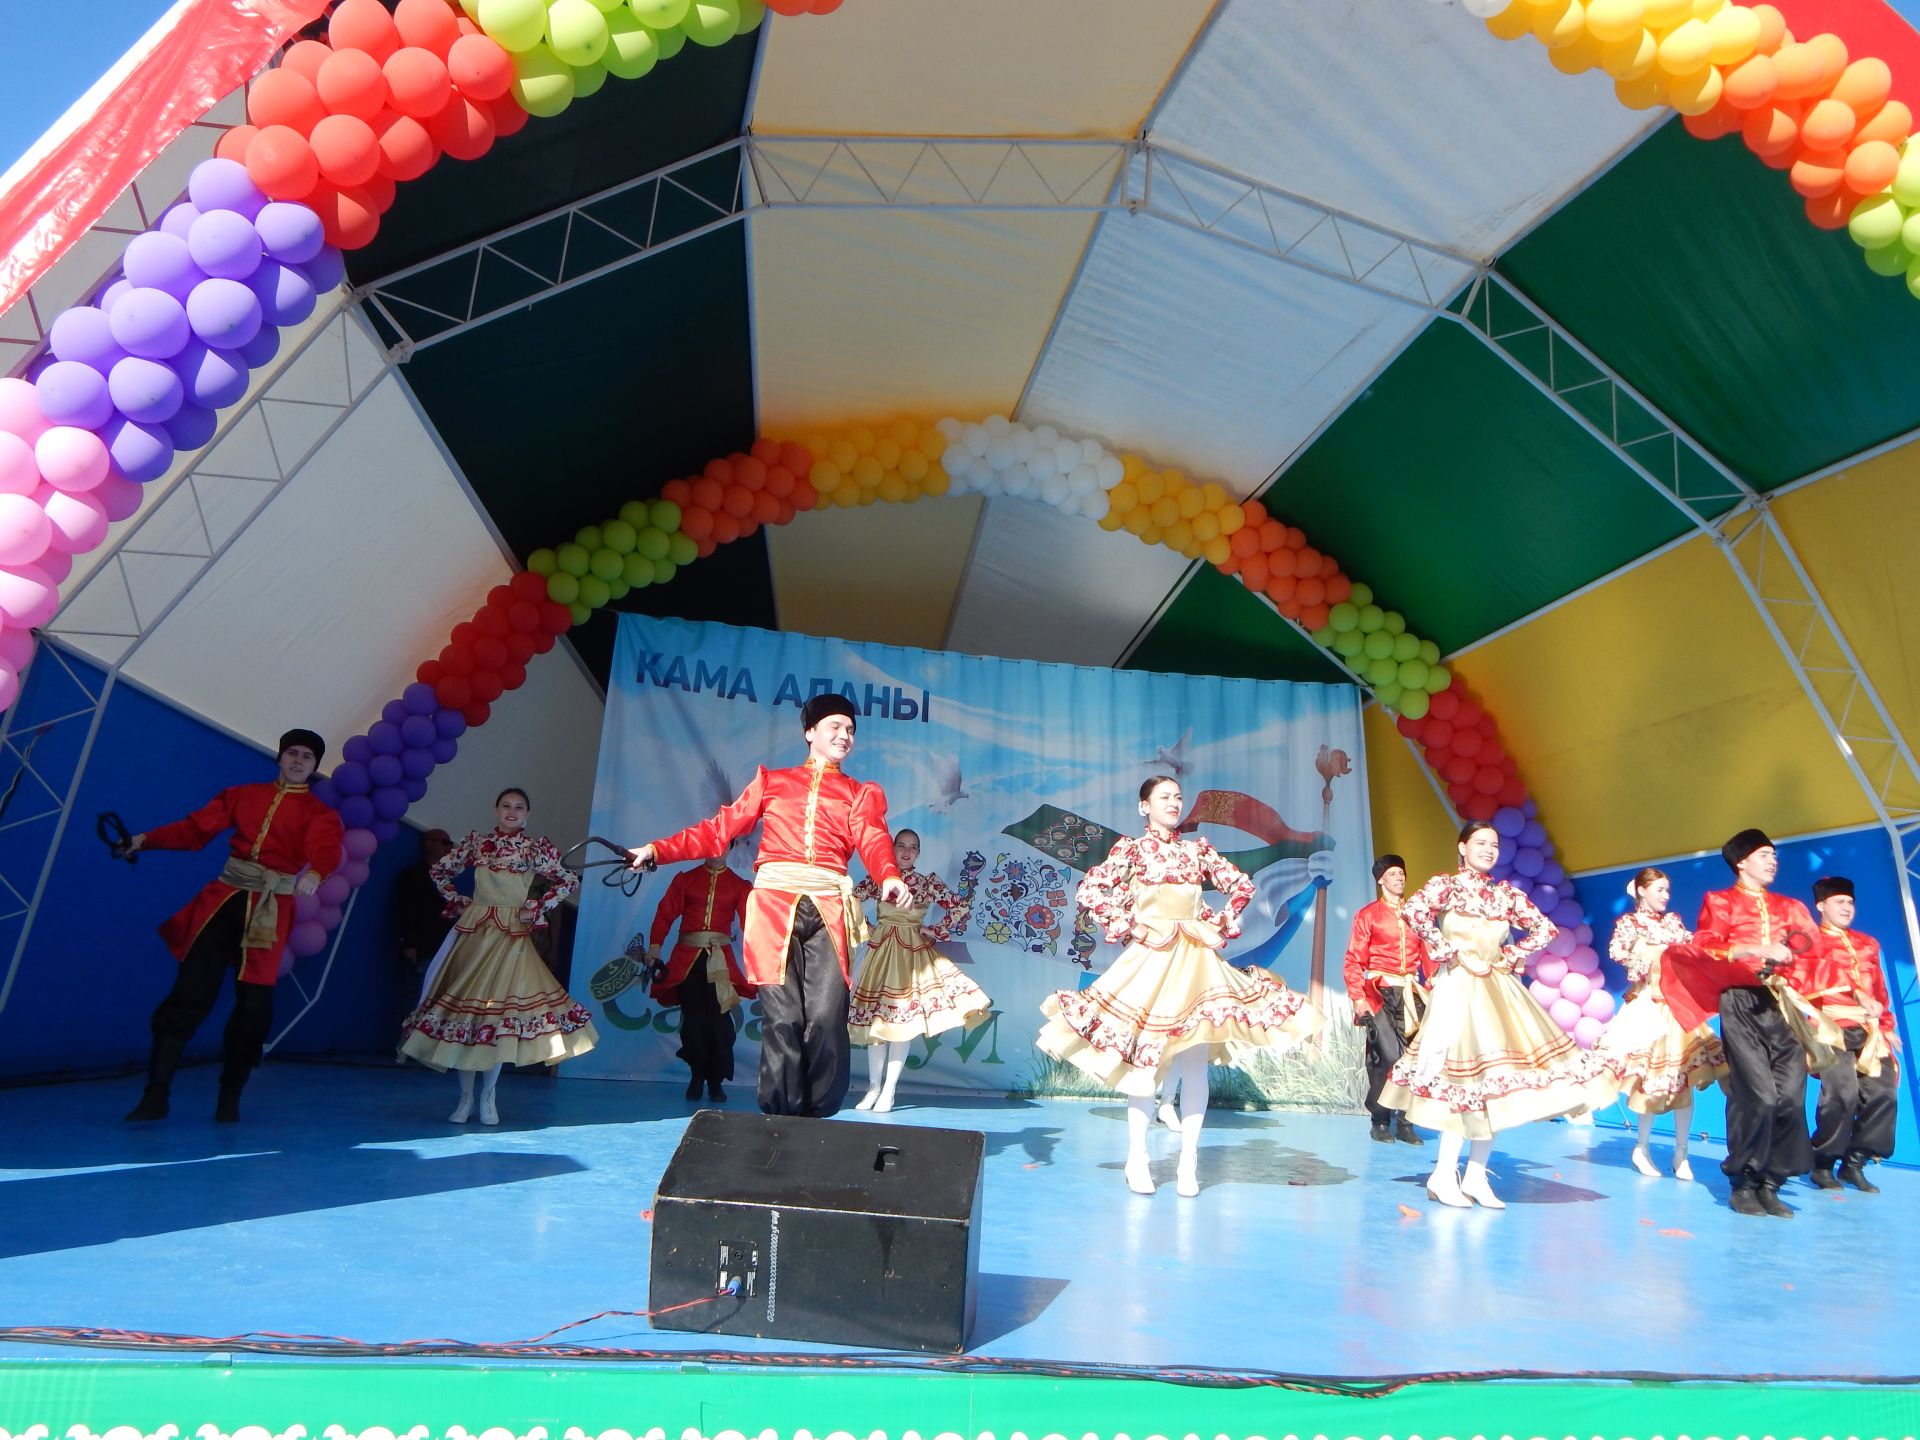 Главная сцена и майдан весь день радовали камполянцев на празднике "Сабантуй-2019" + ФОТОРЕПОРТАЖ